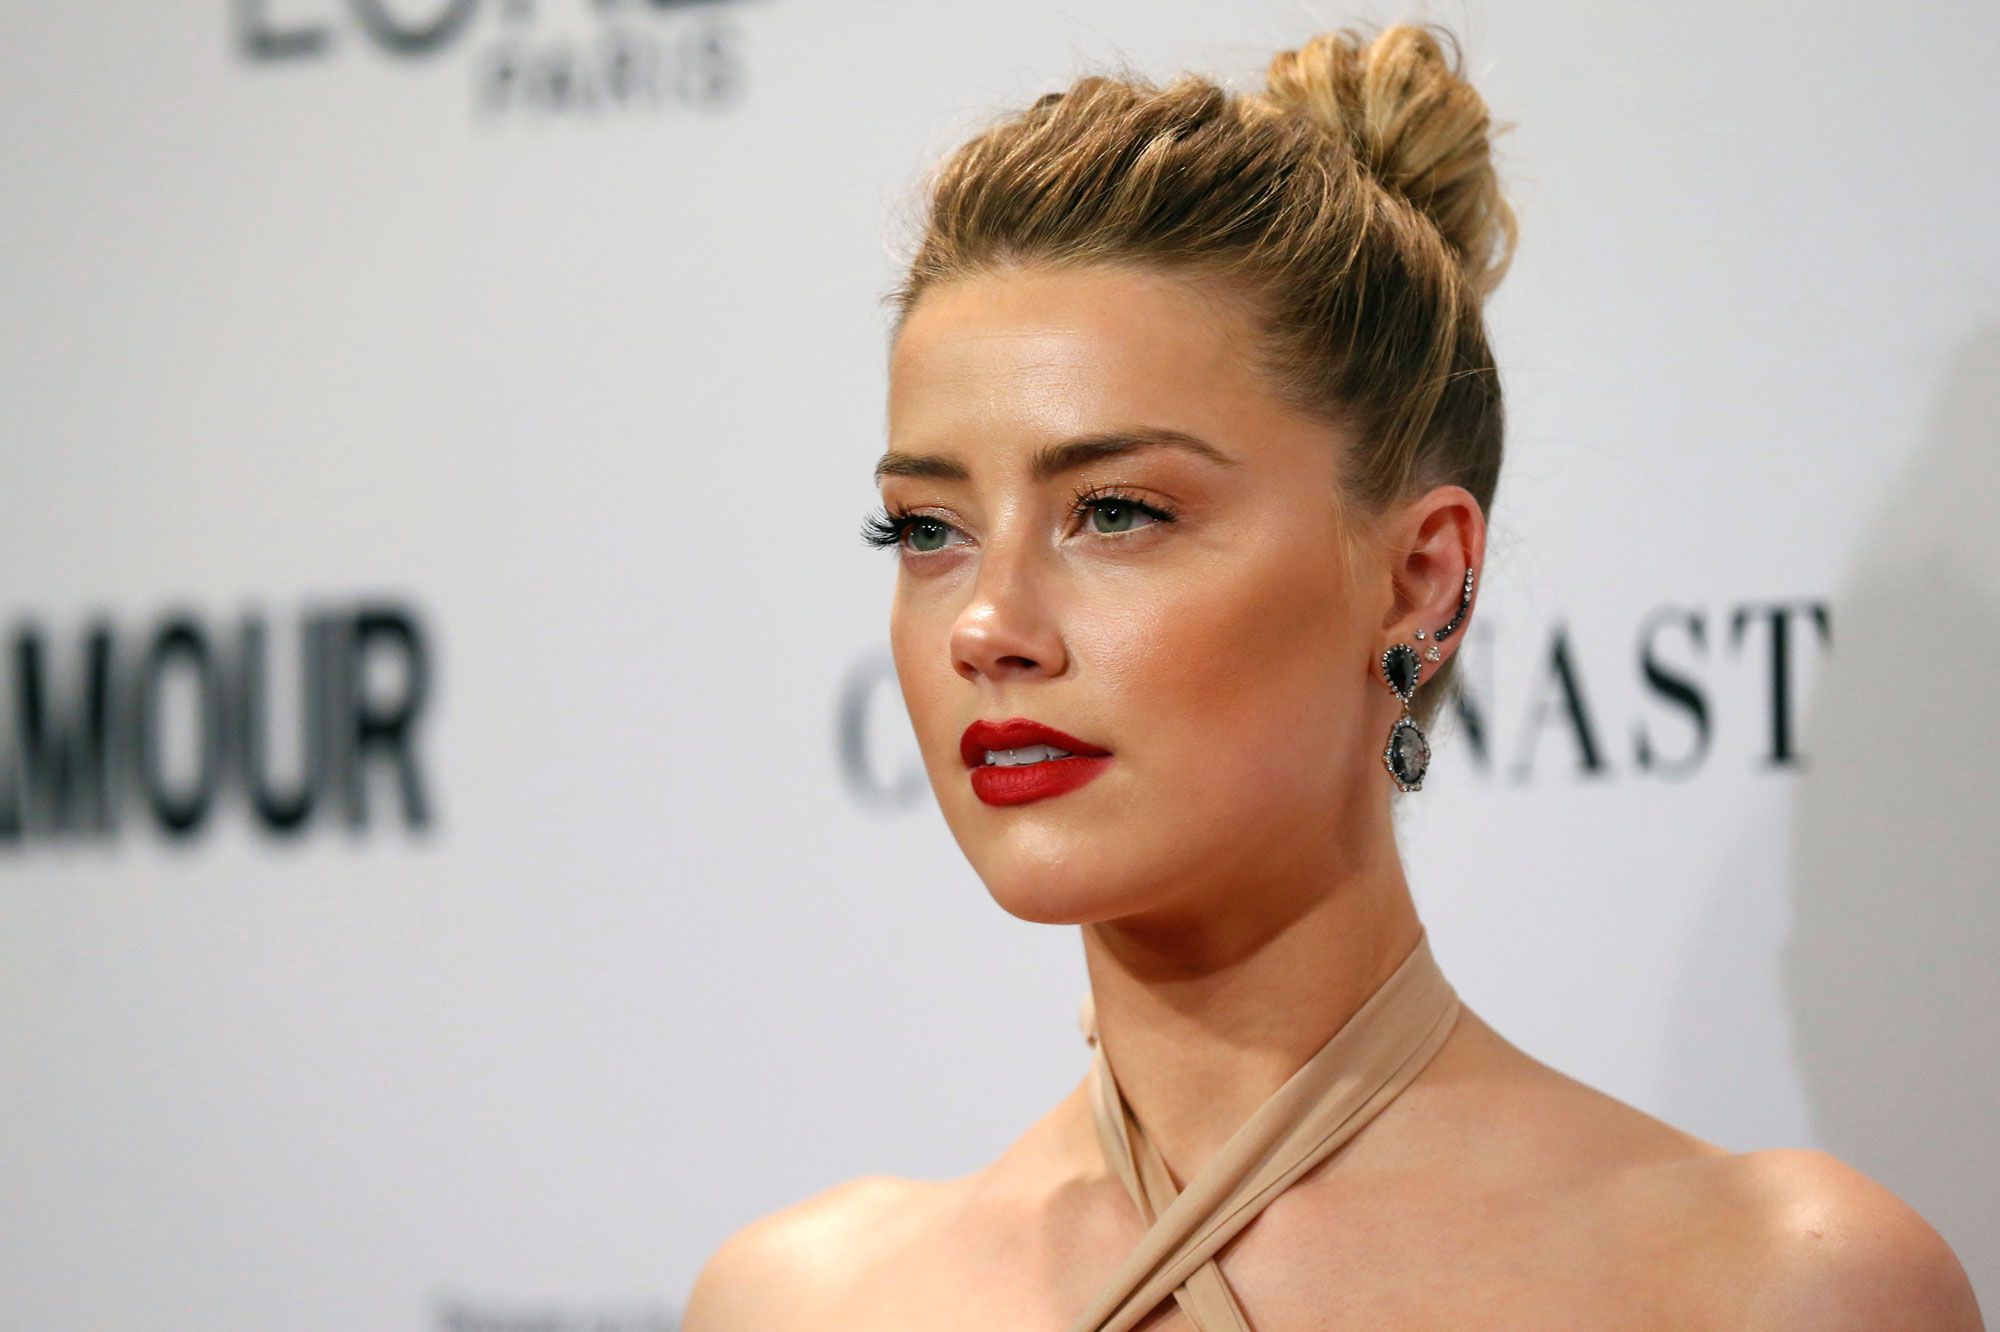 Amber Heard se dévoile téton apparent sur Instagram : la polémique enfle !